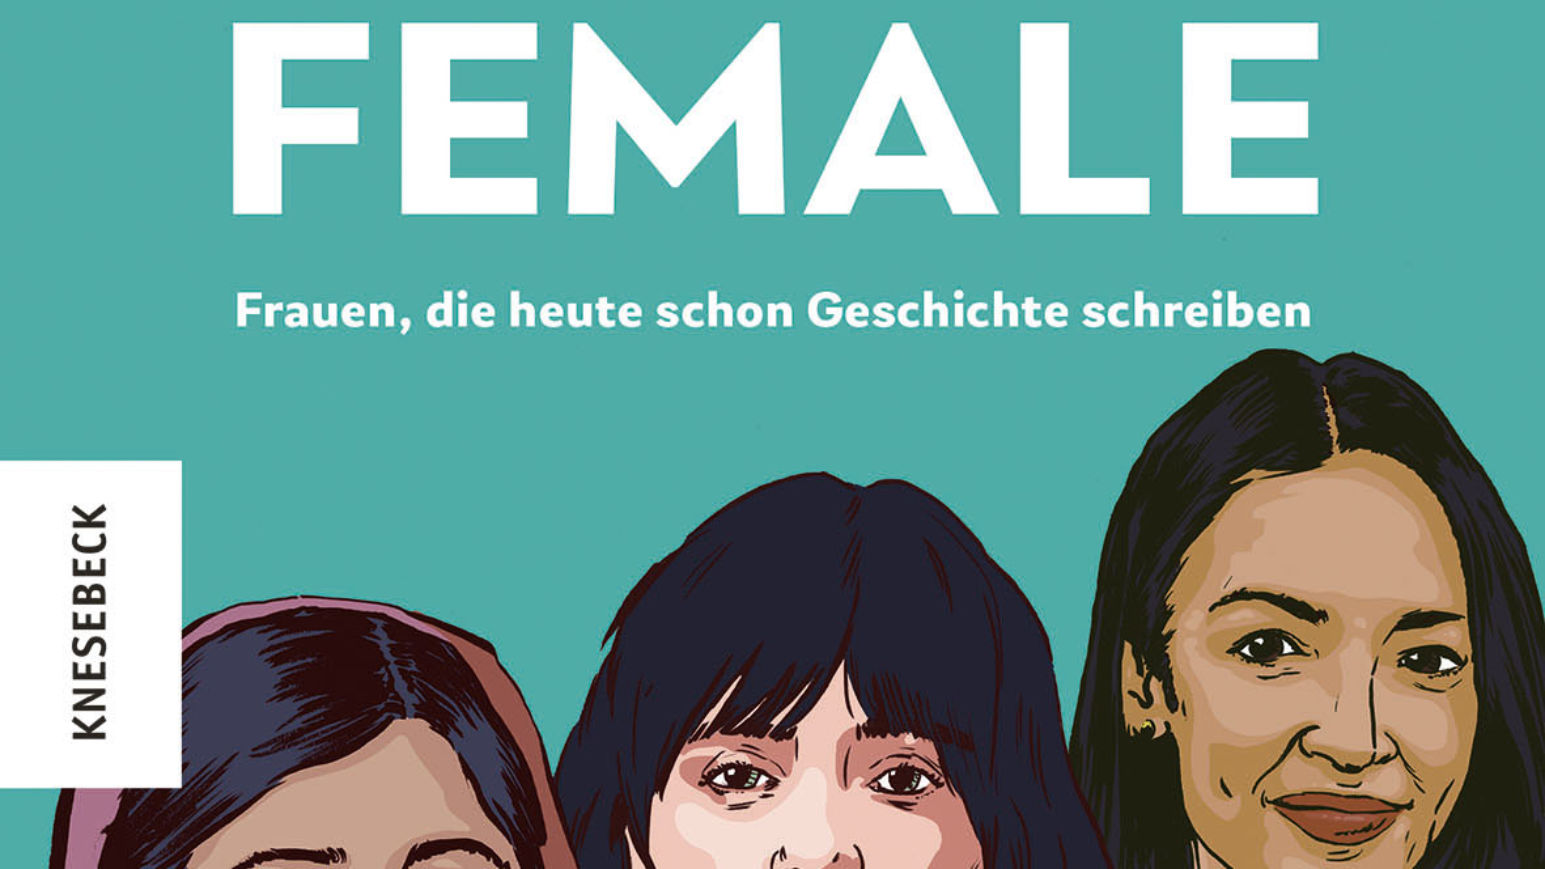 Change Is Female von Jan Hendrik Ax und  Mareike Graepel ist im Knesebeck-Verlag erschienen (©Knesebeck)